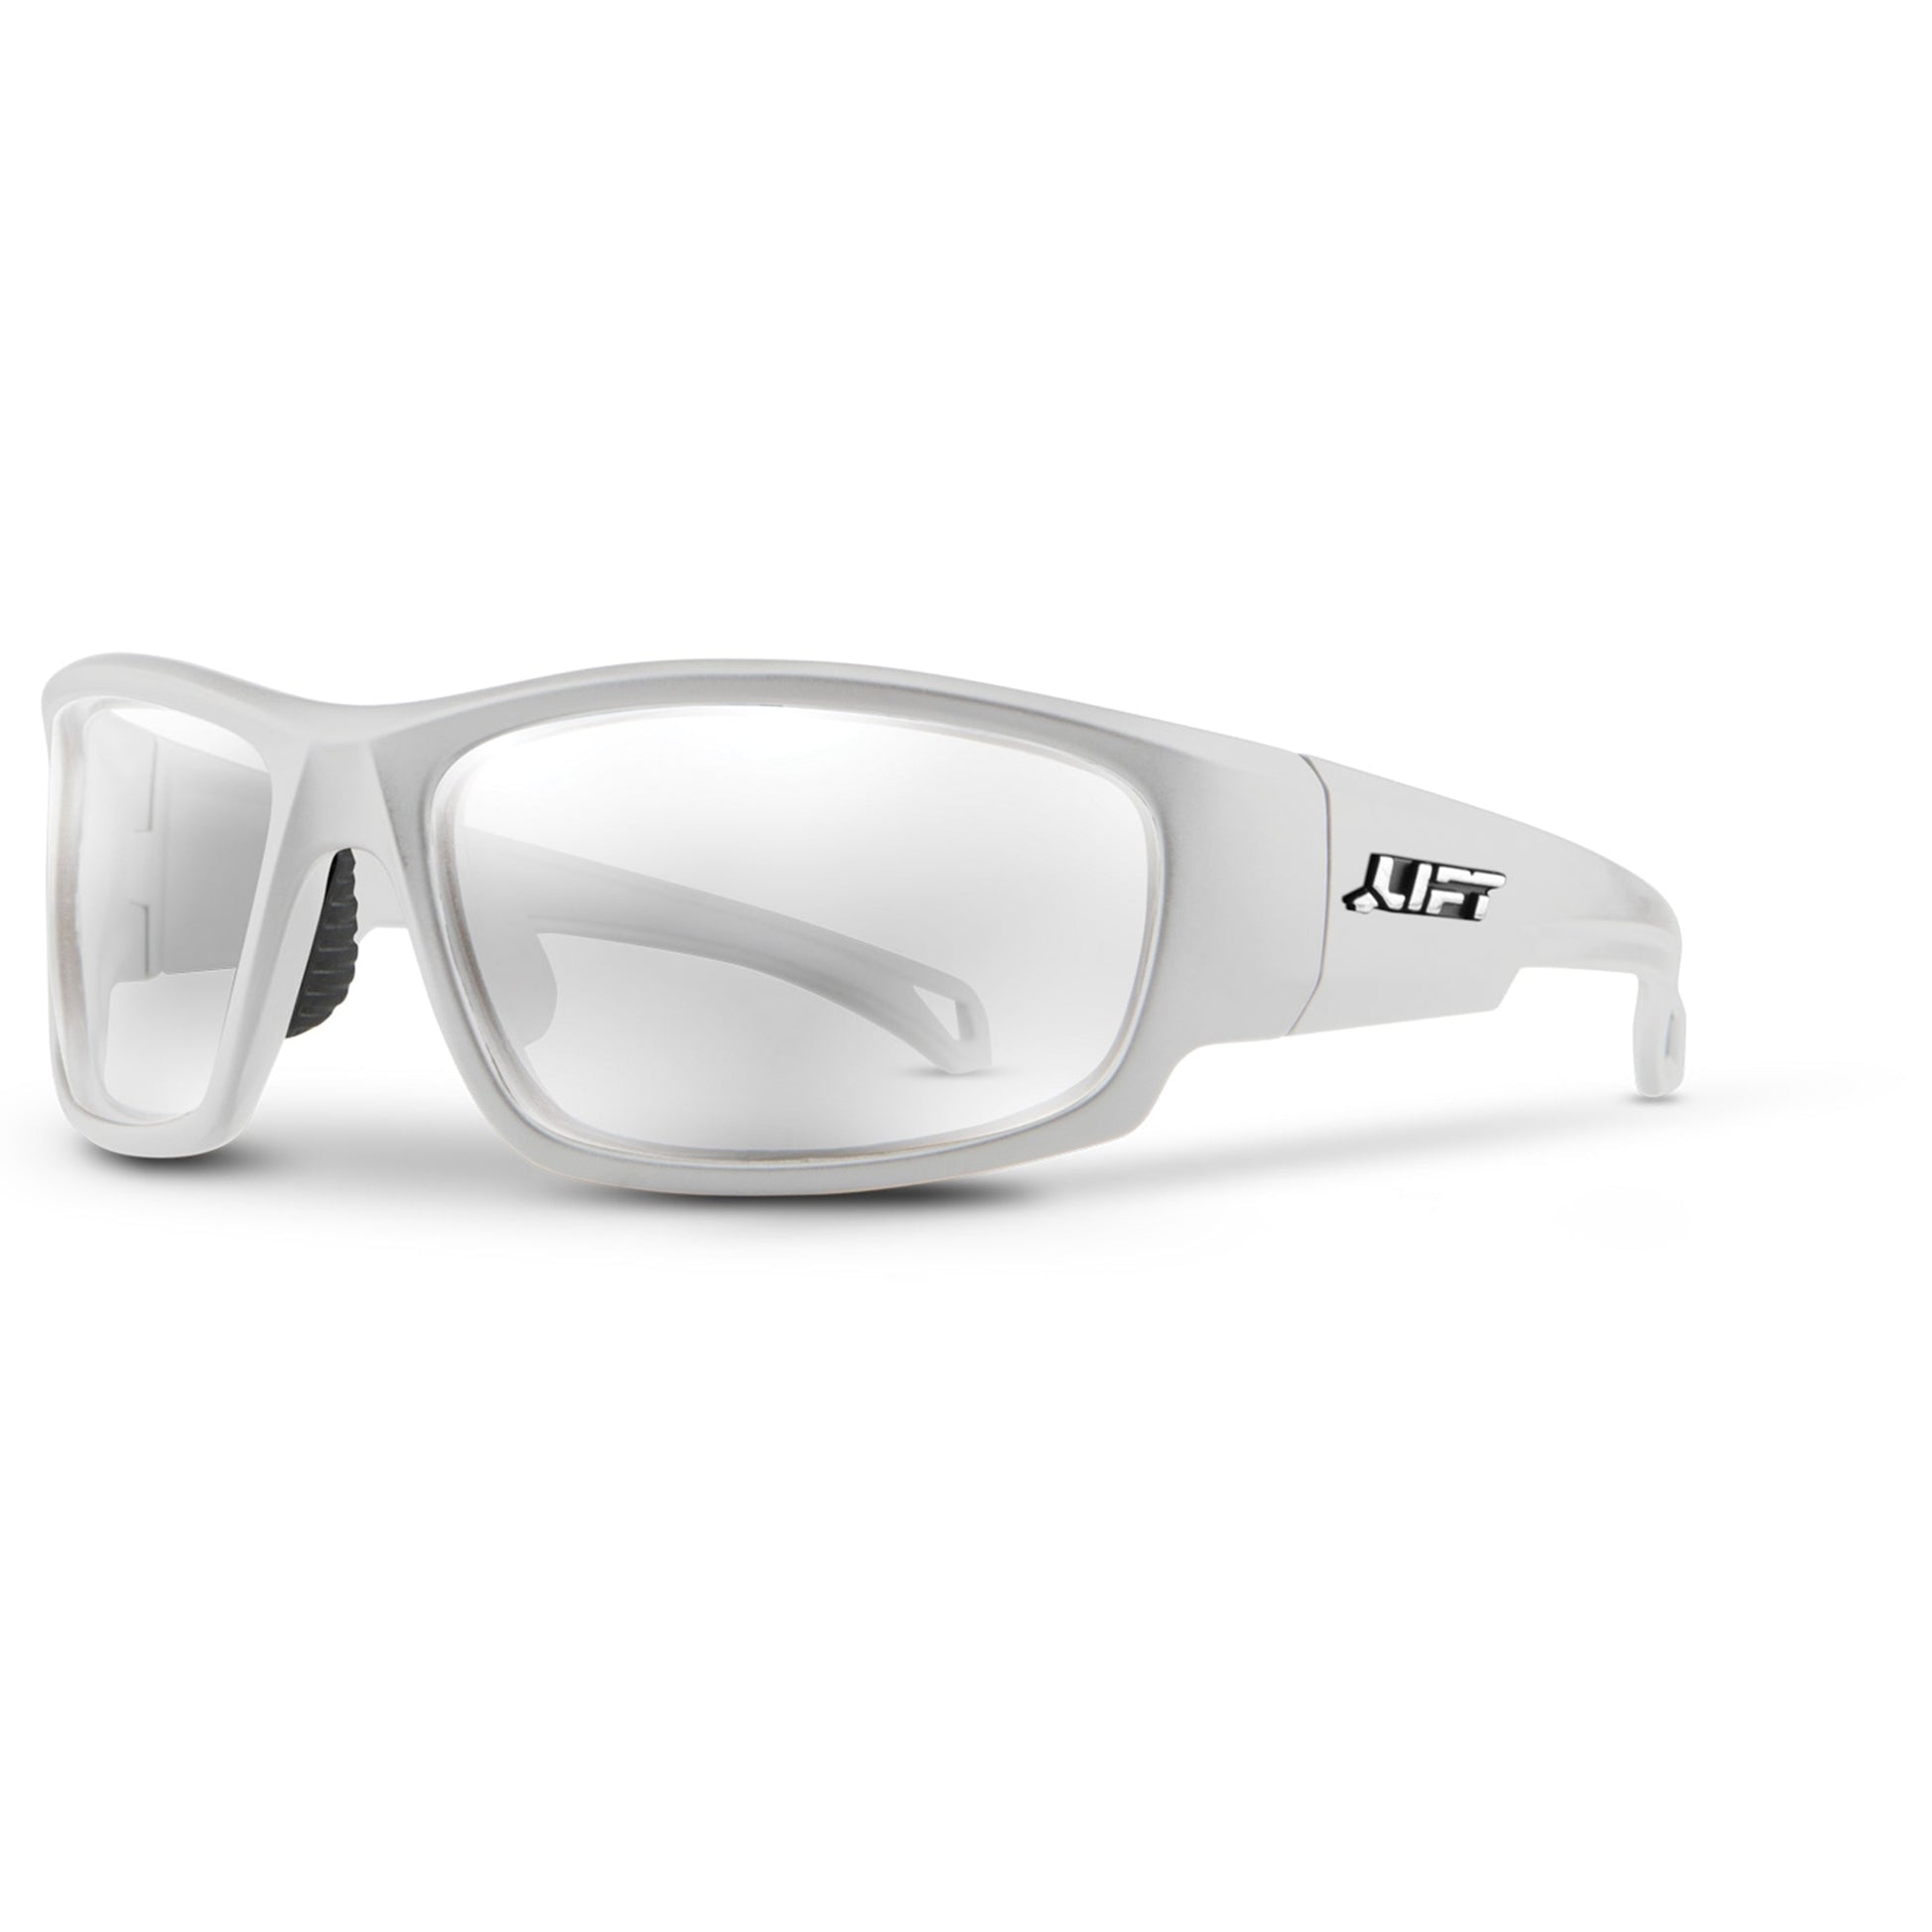 LIFT Safety - Phantom Safety Glasses - White